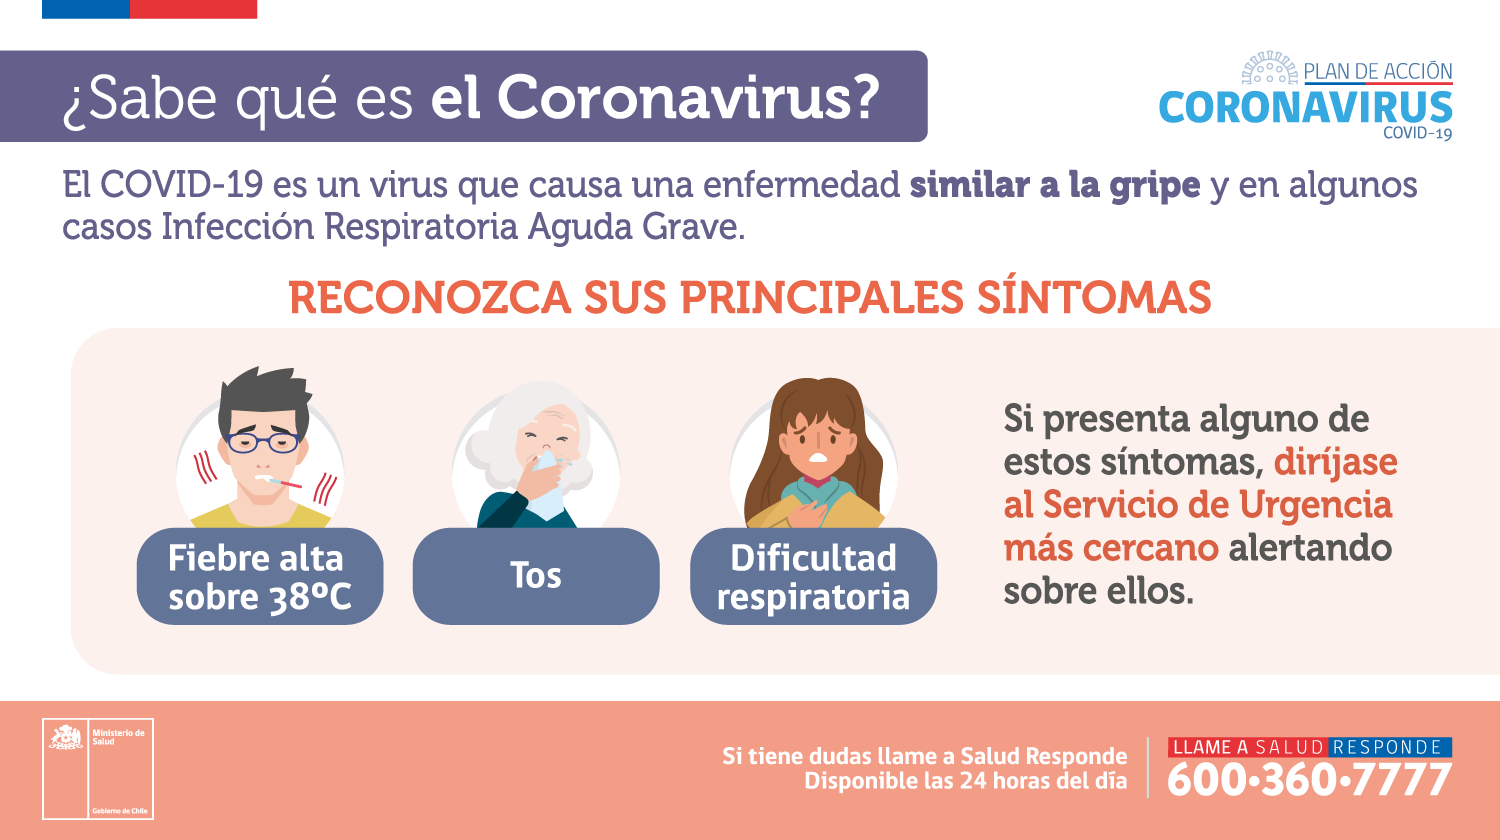 Plan de acción Coronavirus- ¿Sabes qué es el Coronavirus?